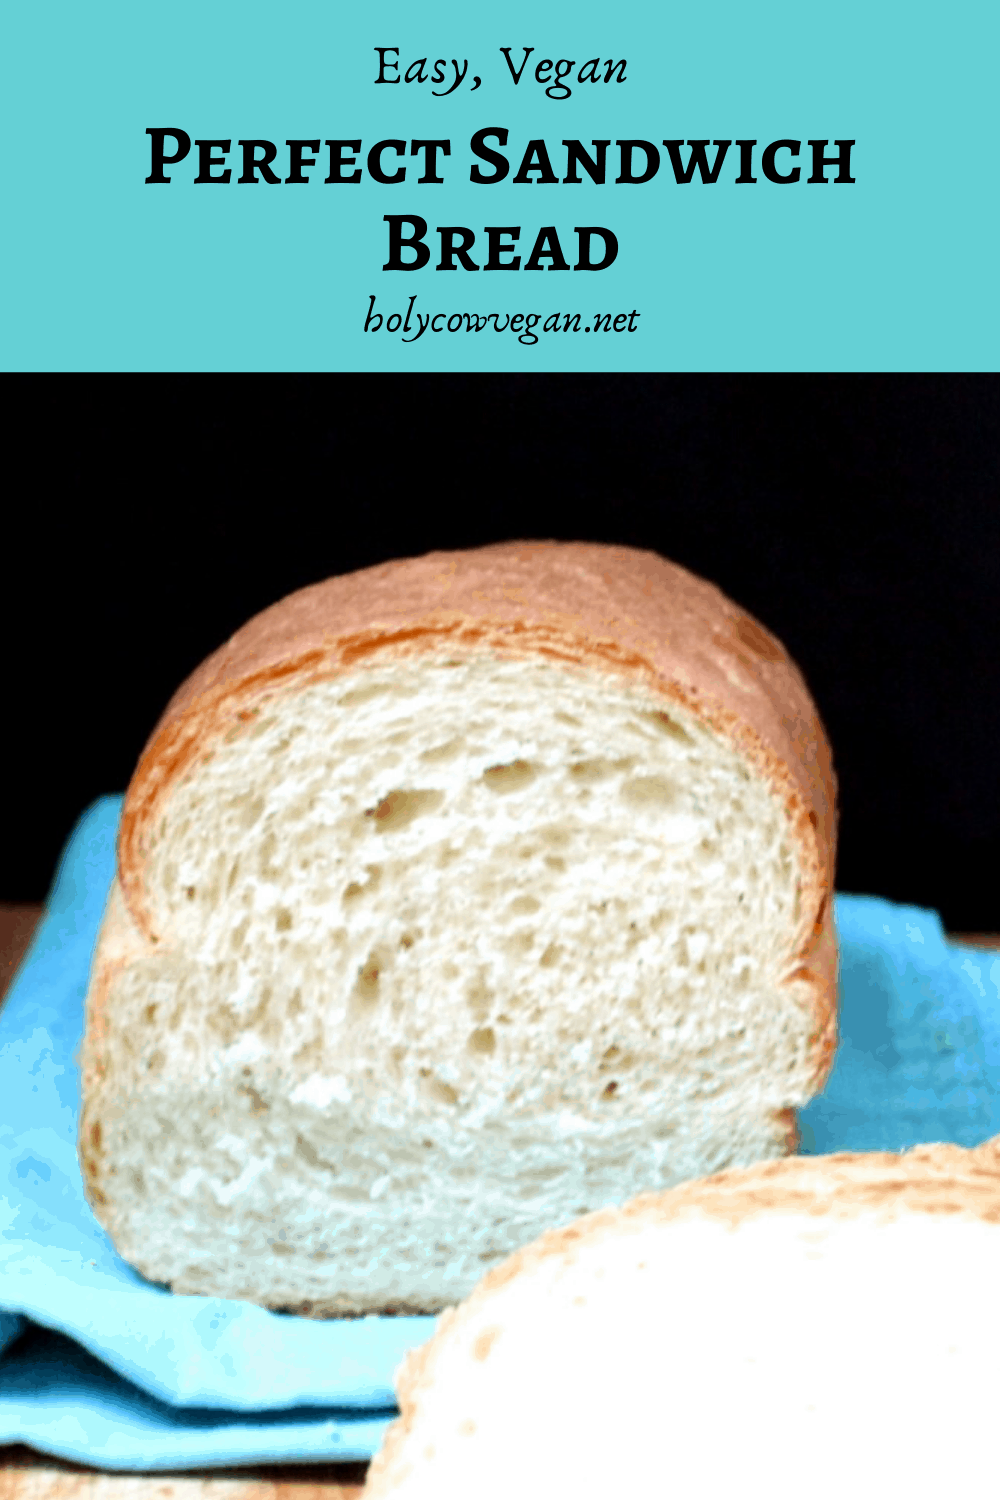 Perfect Sandwich Bread, no eggs or dairy, vegan recipe